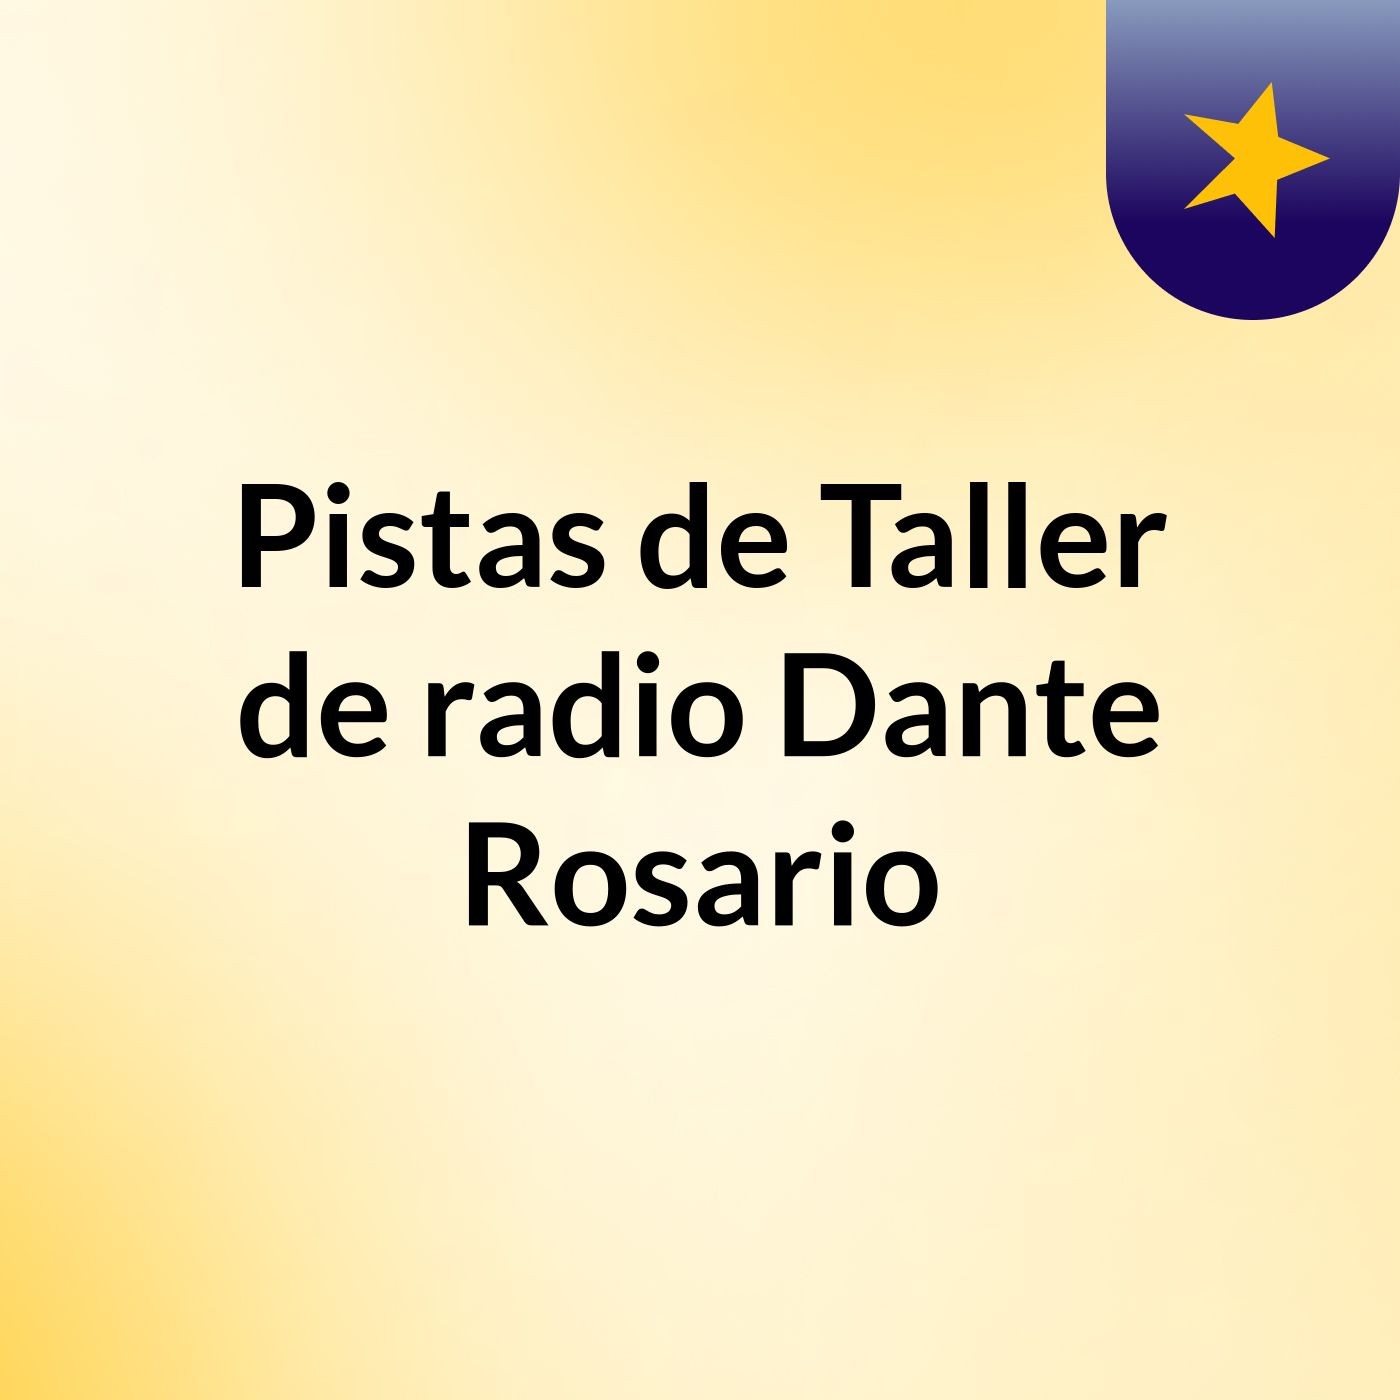 Pistas de Taller de radio Dante Rosario